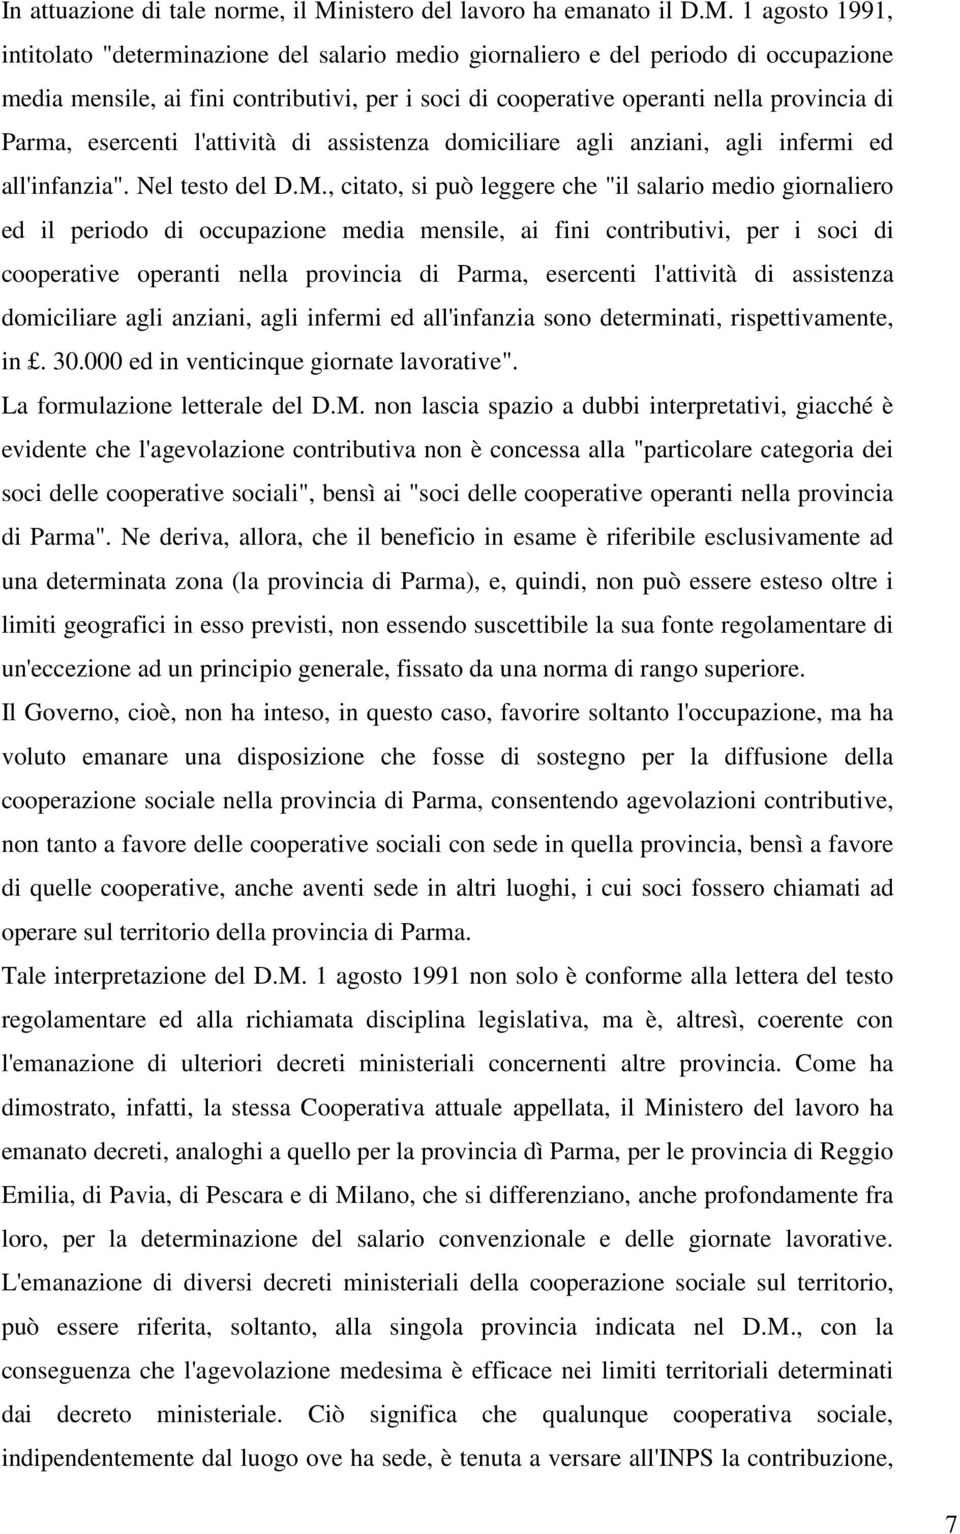 1 agosto 1991, intitolato "determinazione del salario medio giornaliero e del periodo di occupazione media mensile, ai fini contributivi, per i soci di cooperative operanti nella provincia di Parma,